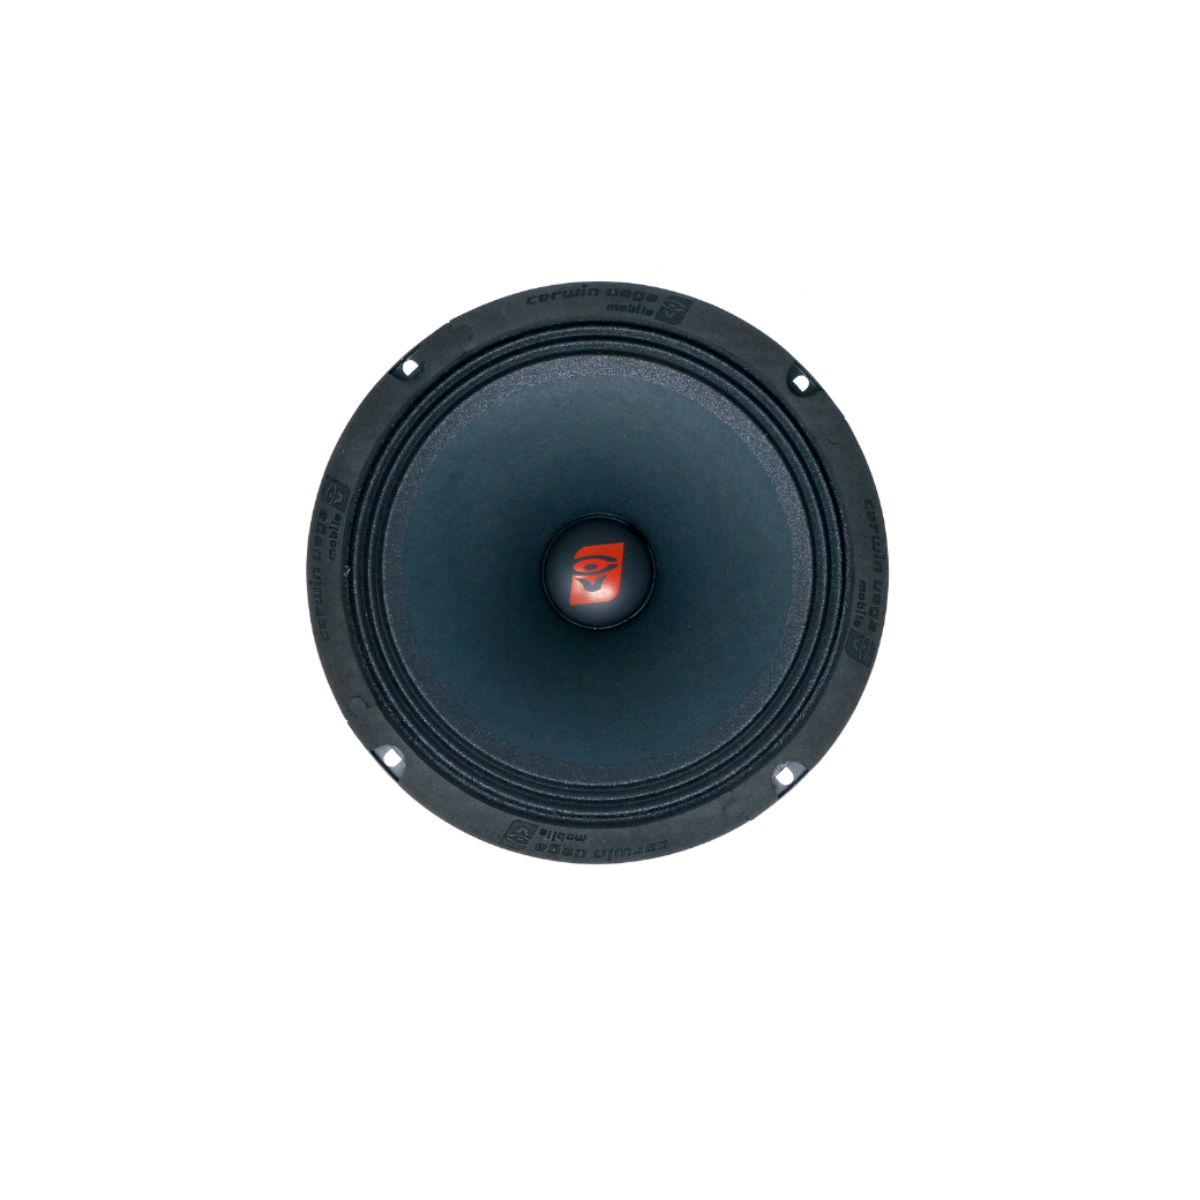 CVP8 - 8" PRO Full Range Speaker / 170W RMS, Single